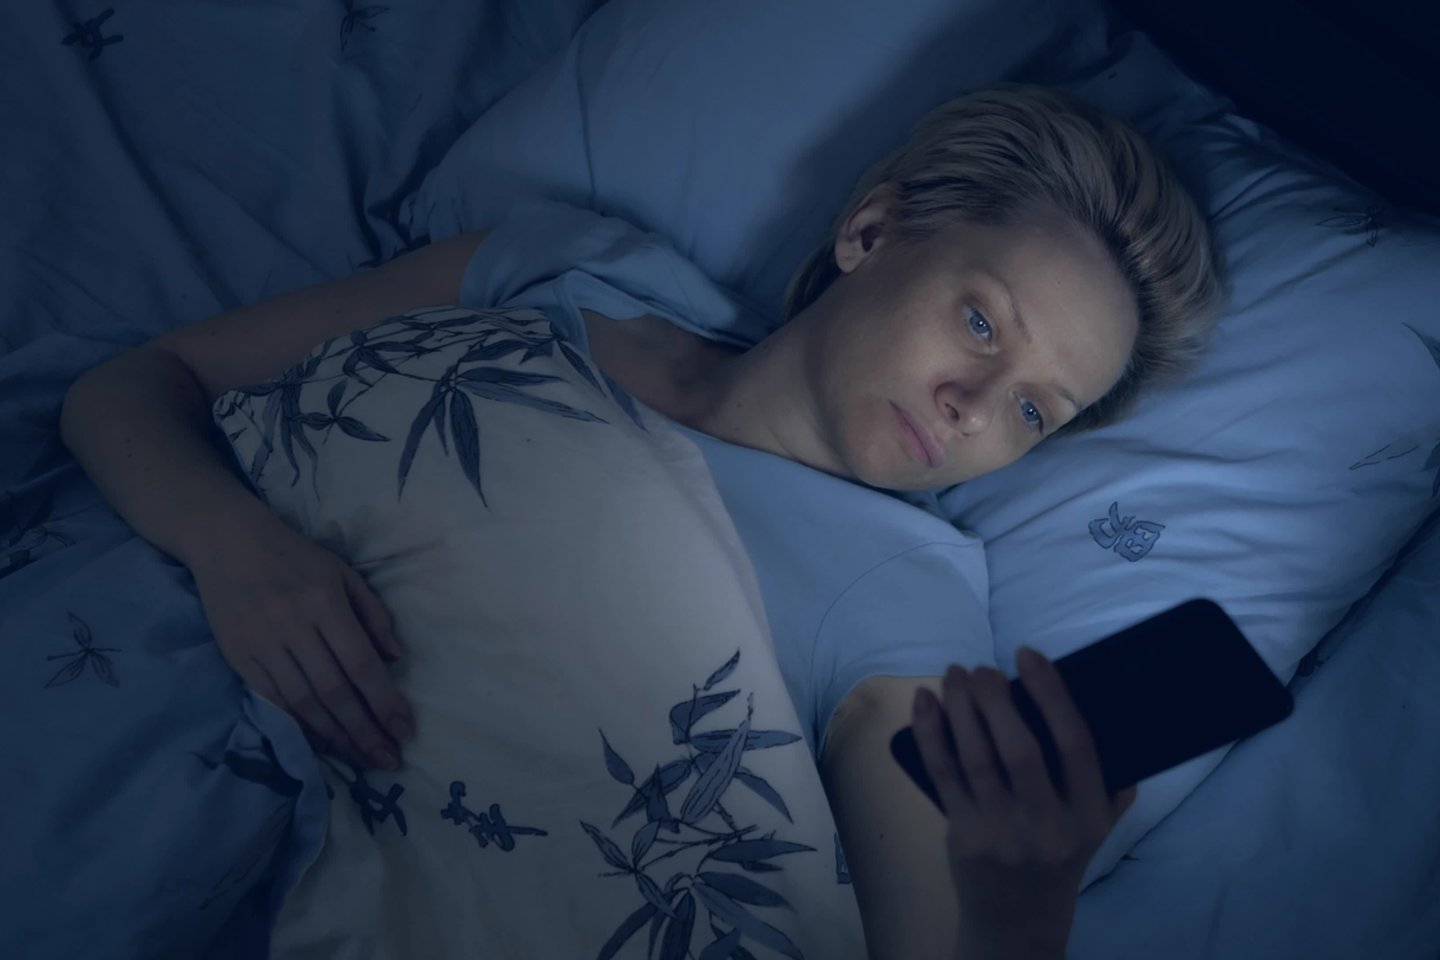 Valandą iki miego skirkite nusiraminimui: prigesinkite šviesas, nesinaudokite telefonu ar kompiuteriu, pagarinkite eterinių aliejų, darykite tempimo ar kvėpavimo pratimus, skaitykite, medituokite.<br>123rf.com asociatyvi nuotr.